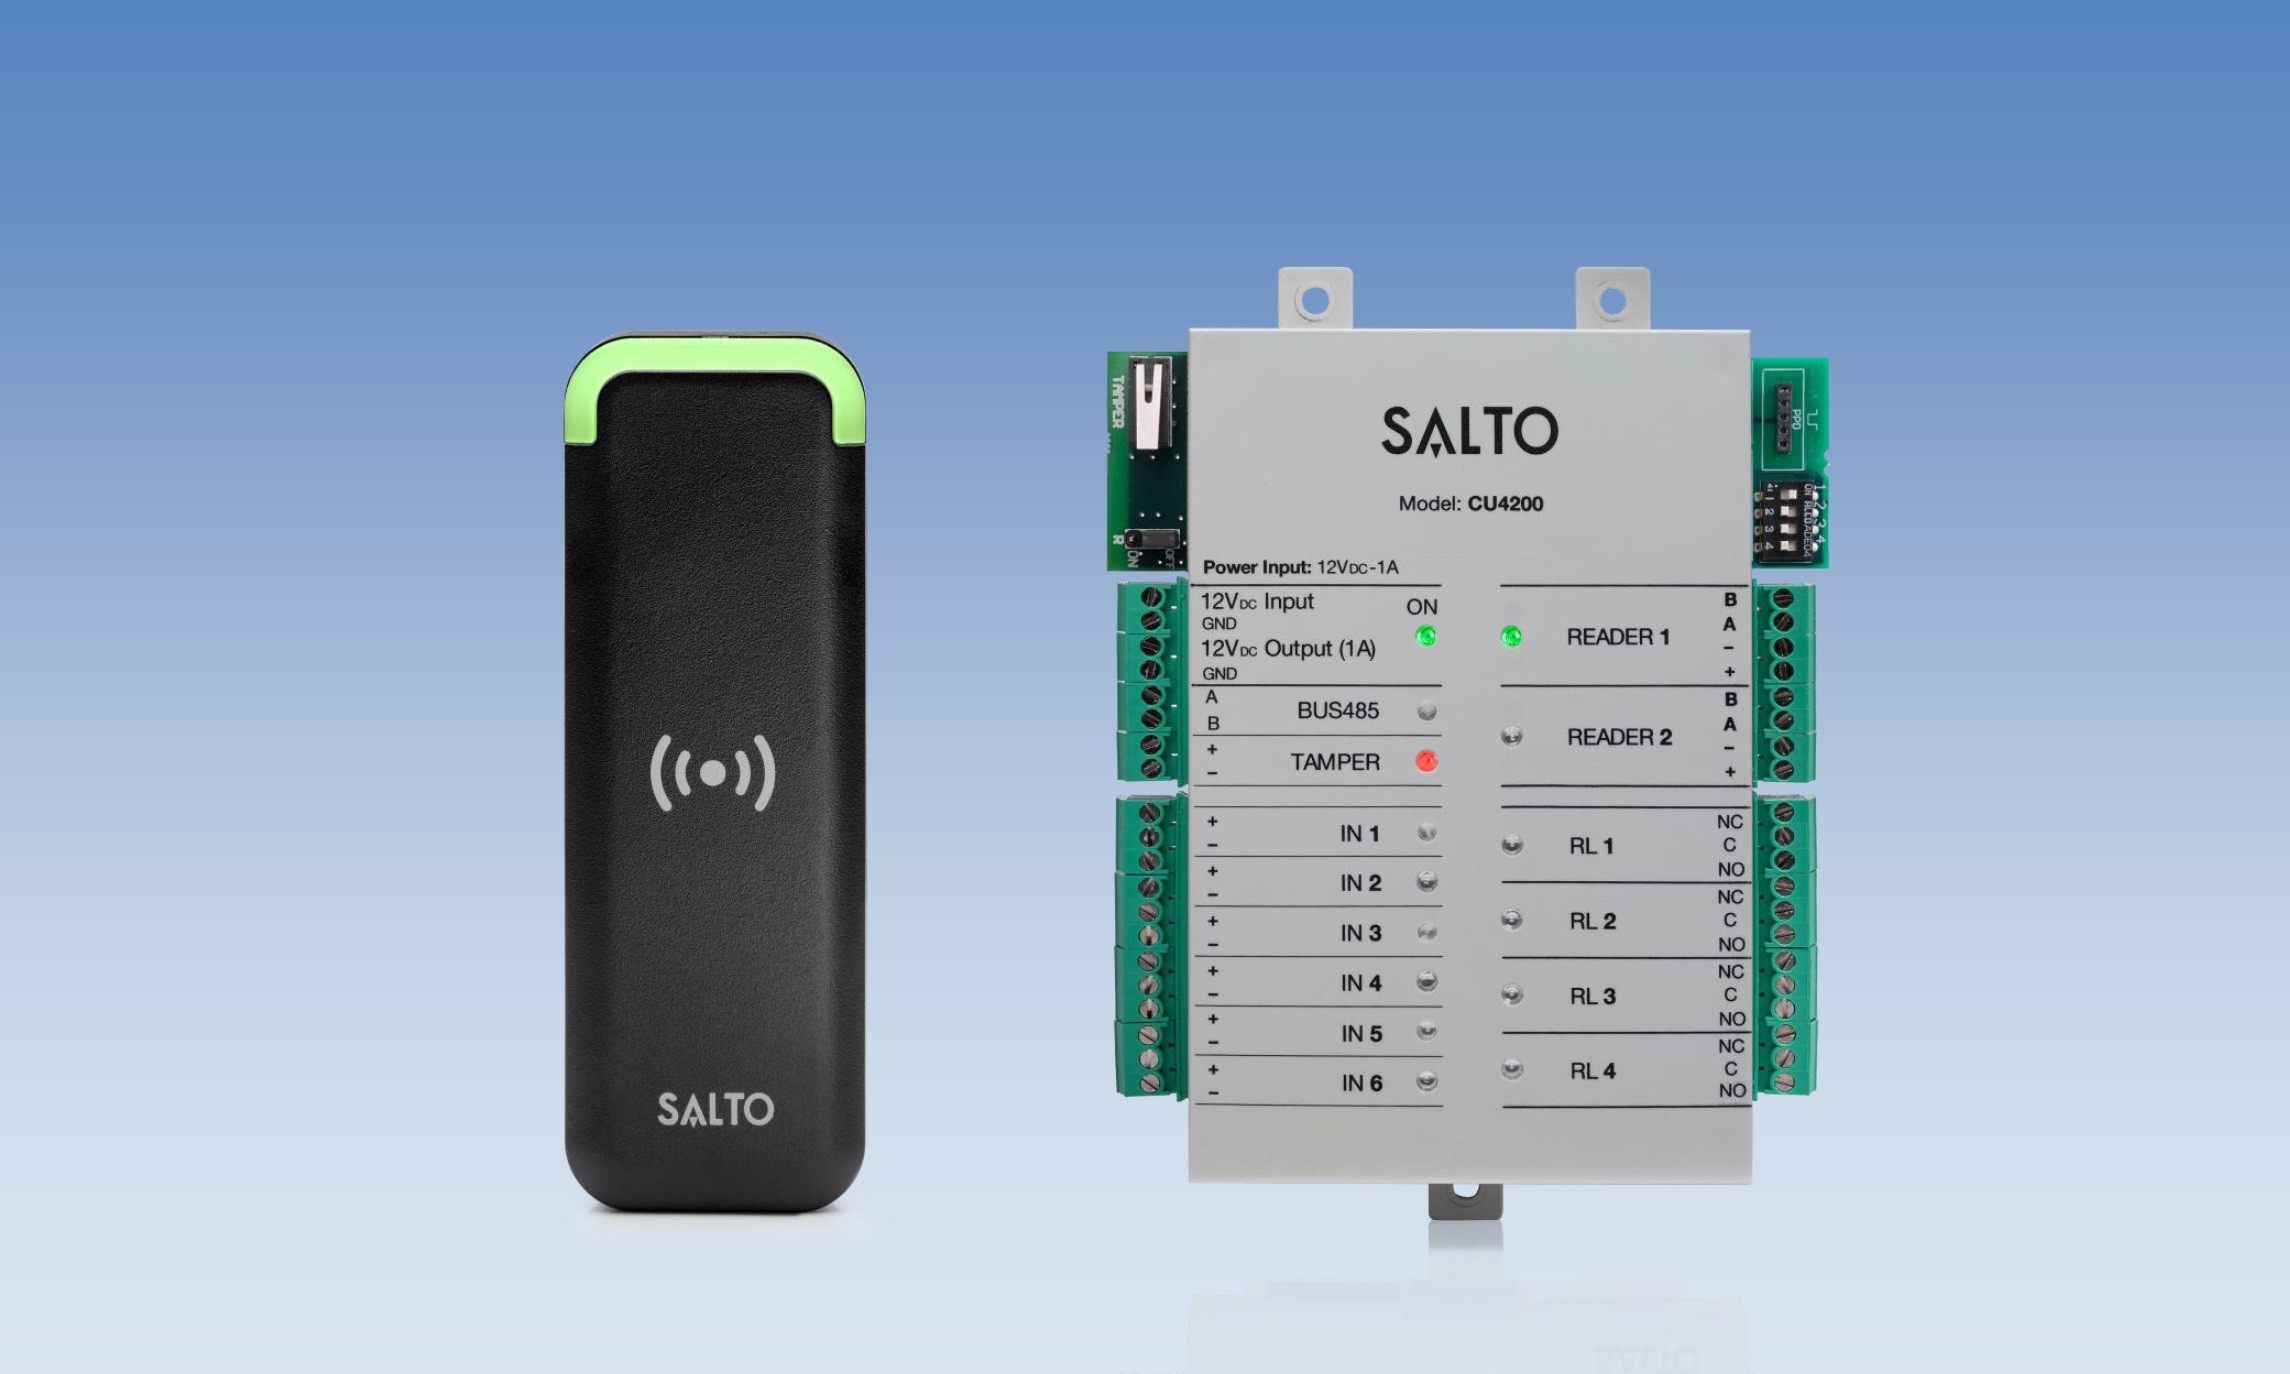 SALTO XS4 access control solution achieves EN 60839 standard